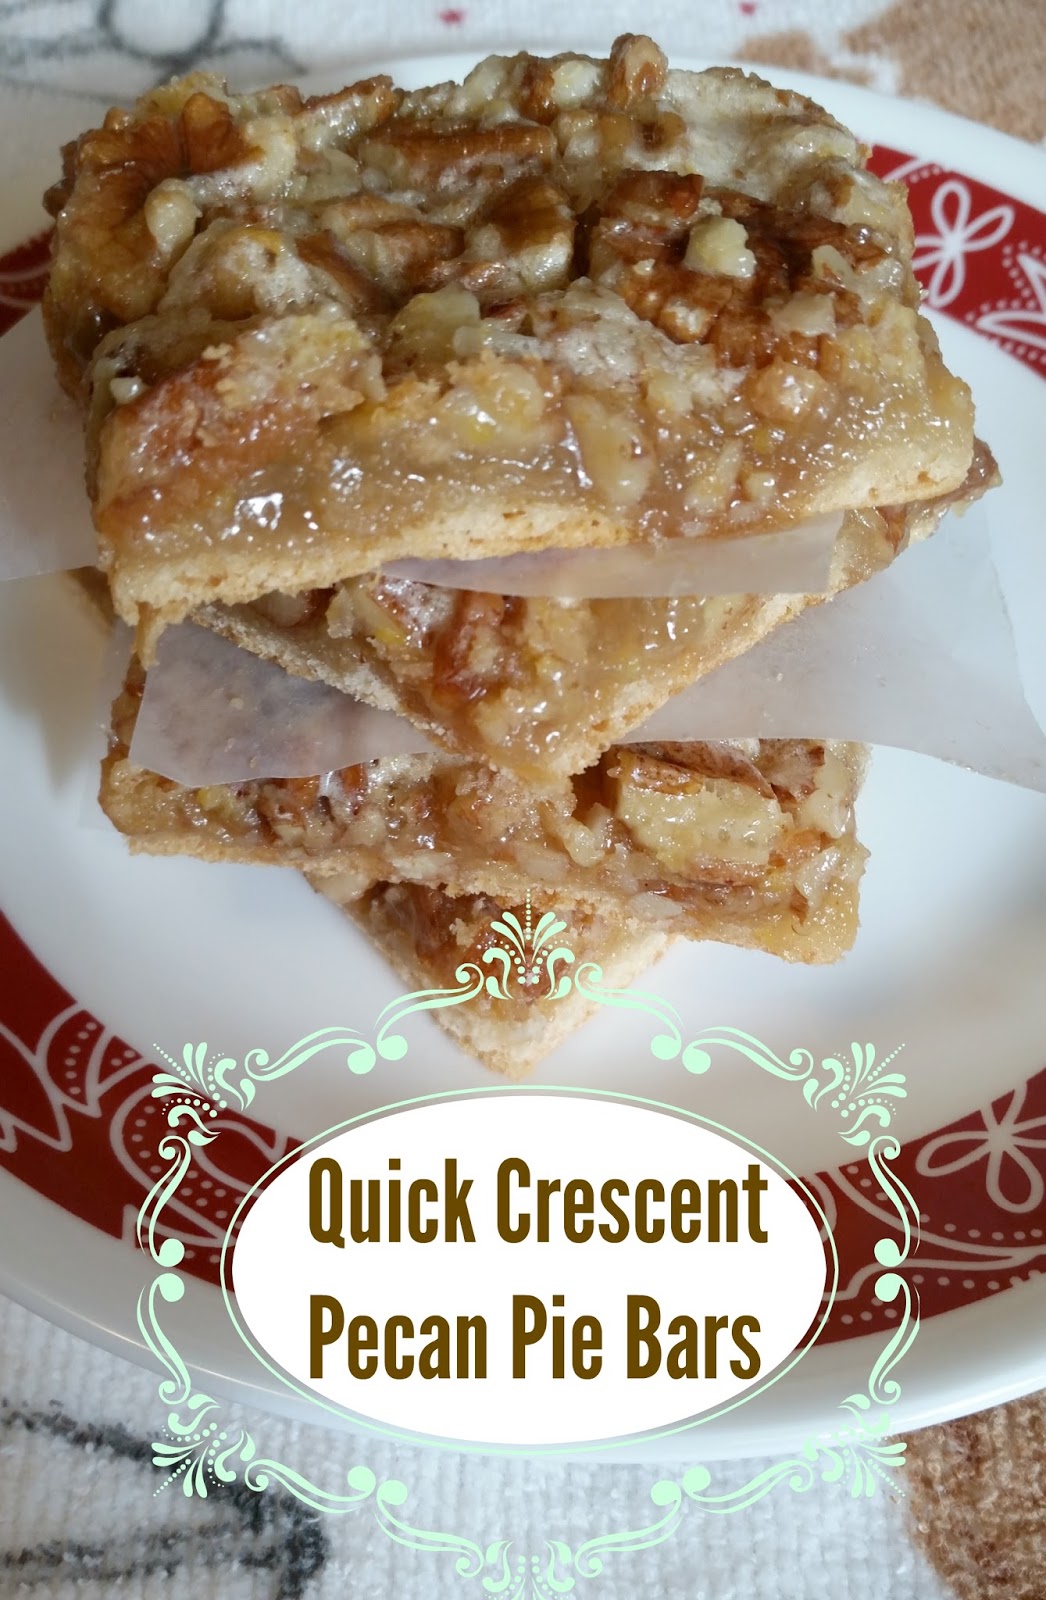 The Better Baker: Quick Crescent Pecan Pie Bars